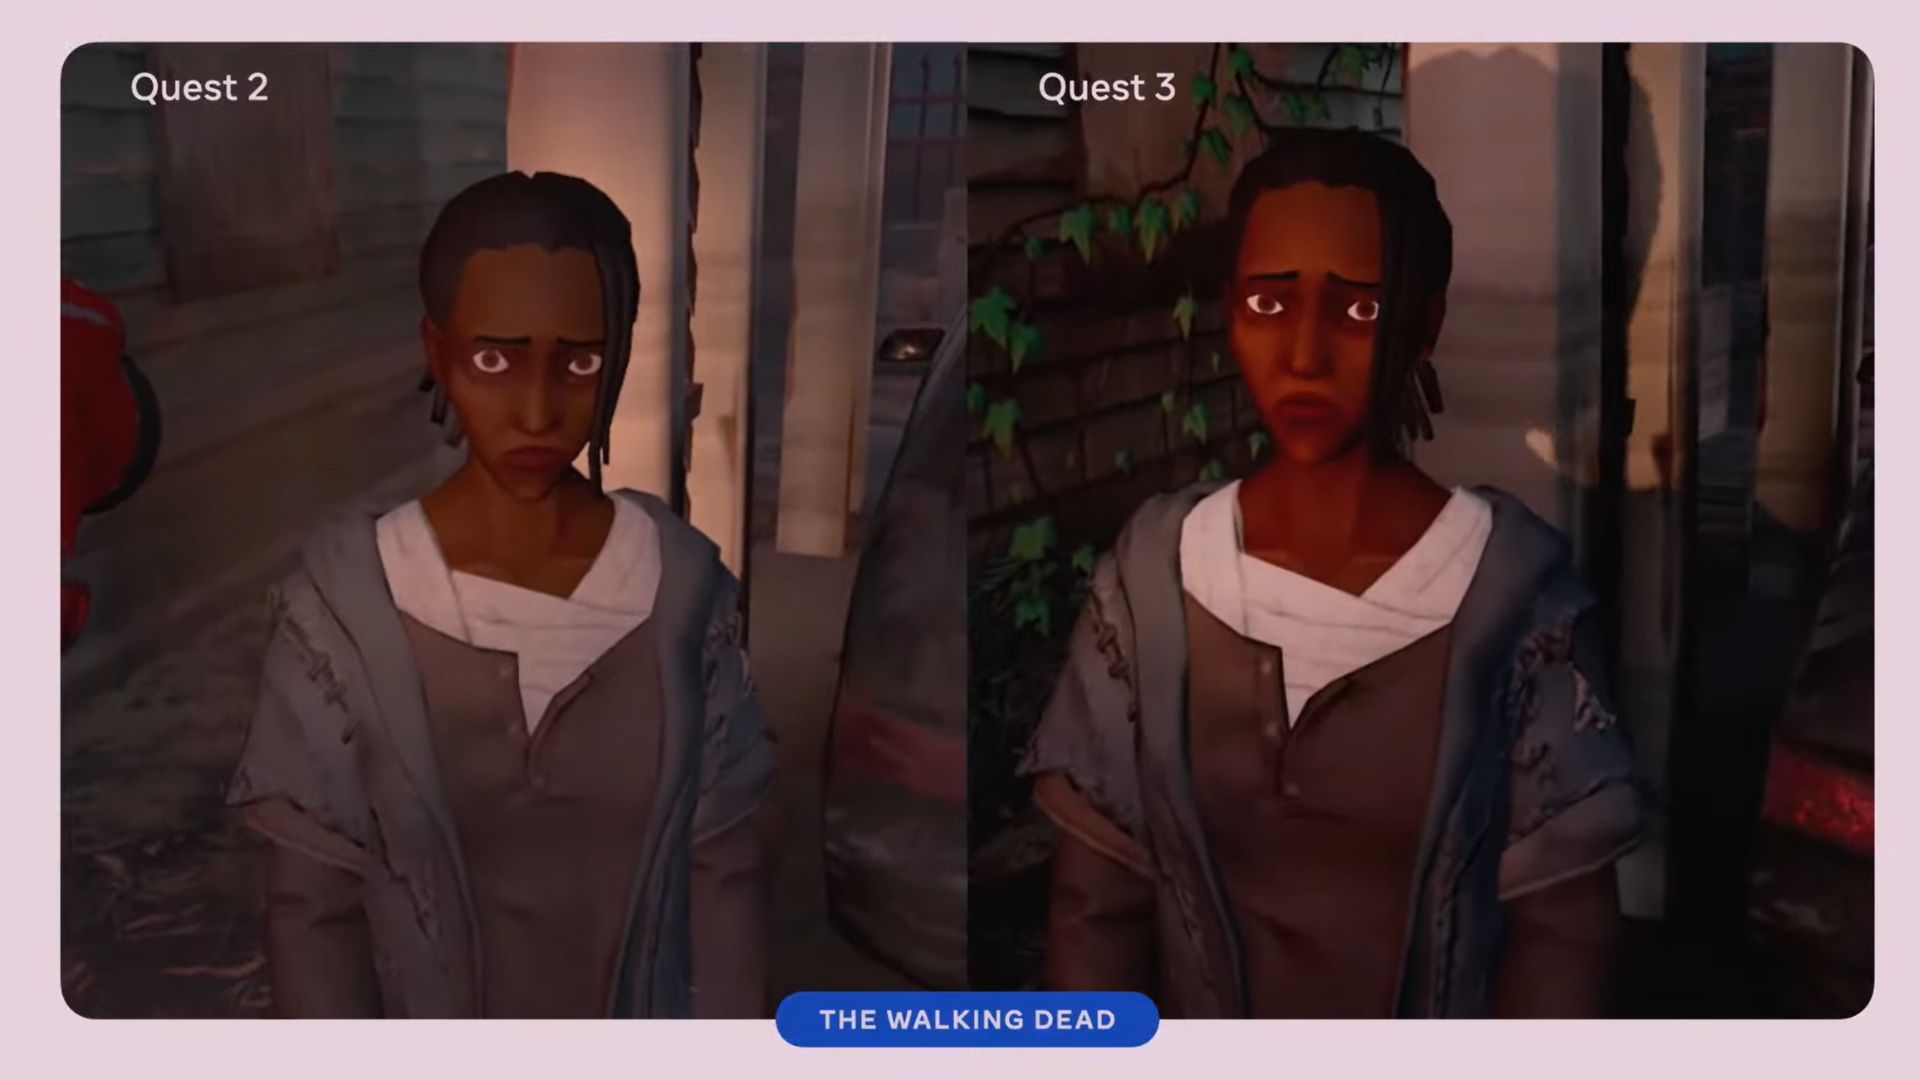 Comparación de gráficos de Meta Quest 3 mostrando el VR walking dead